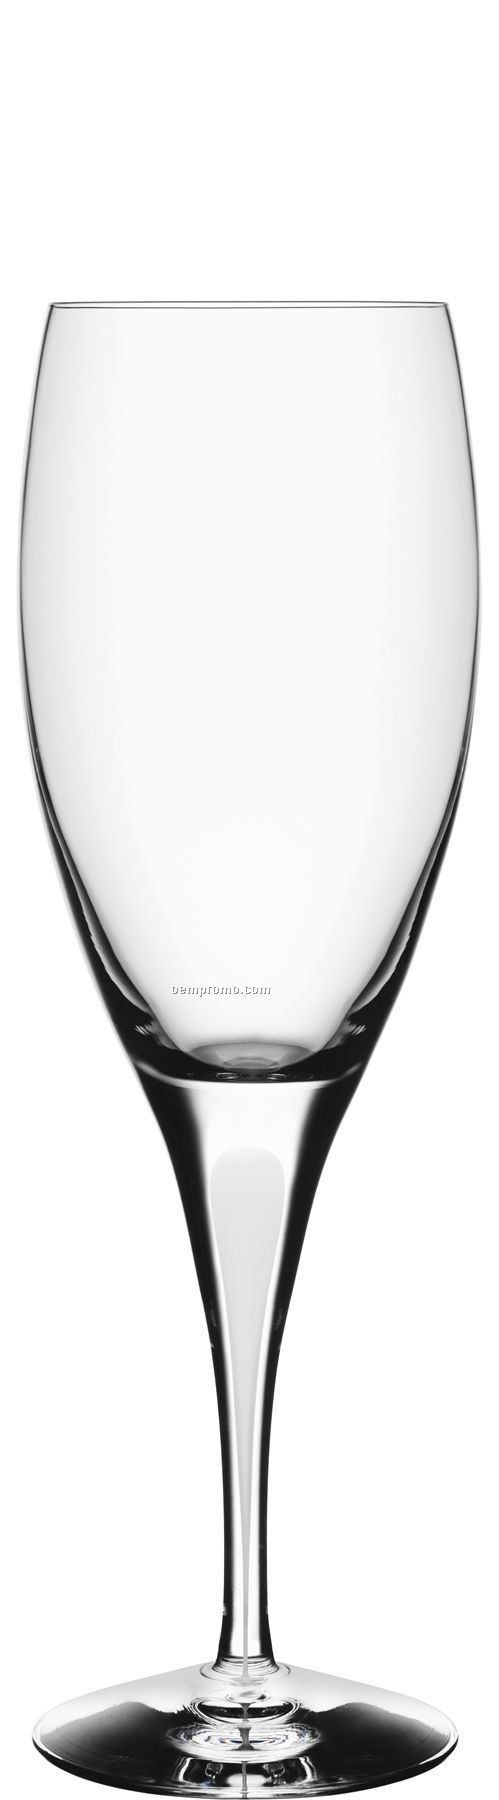 Intermezzo Crystal Satin Claret Wine Glass W/ White Drop